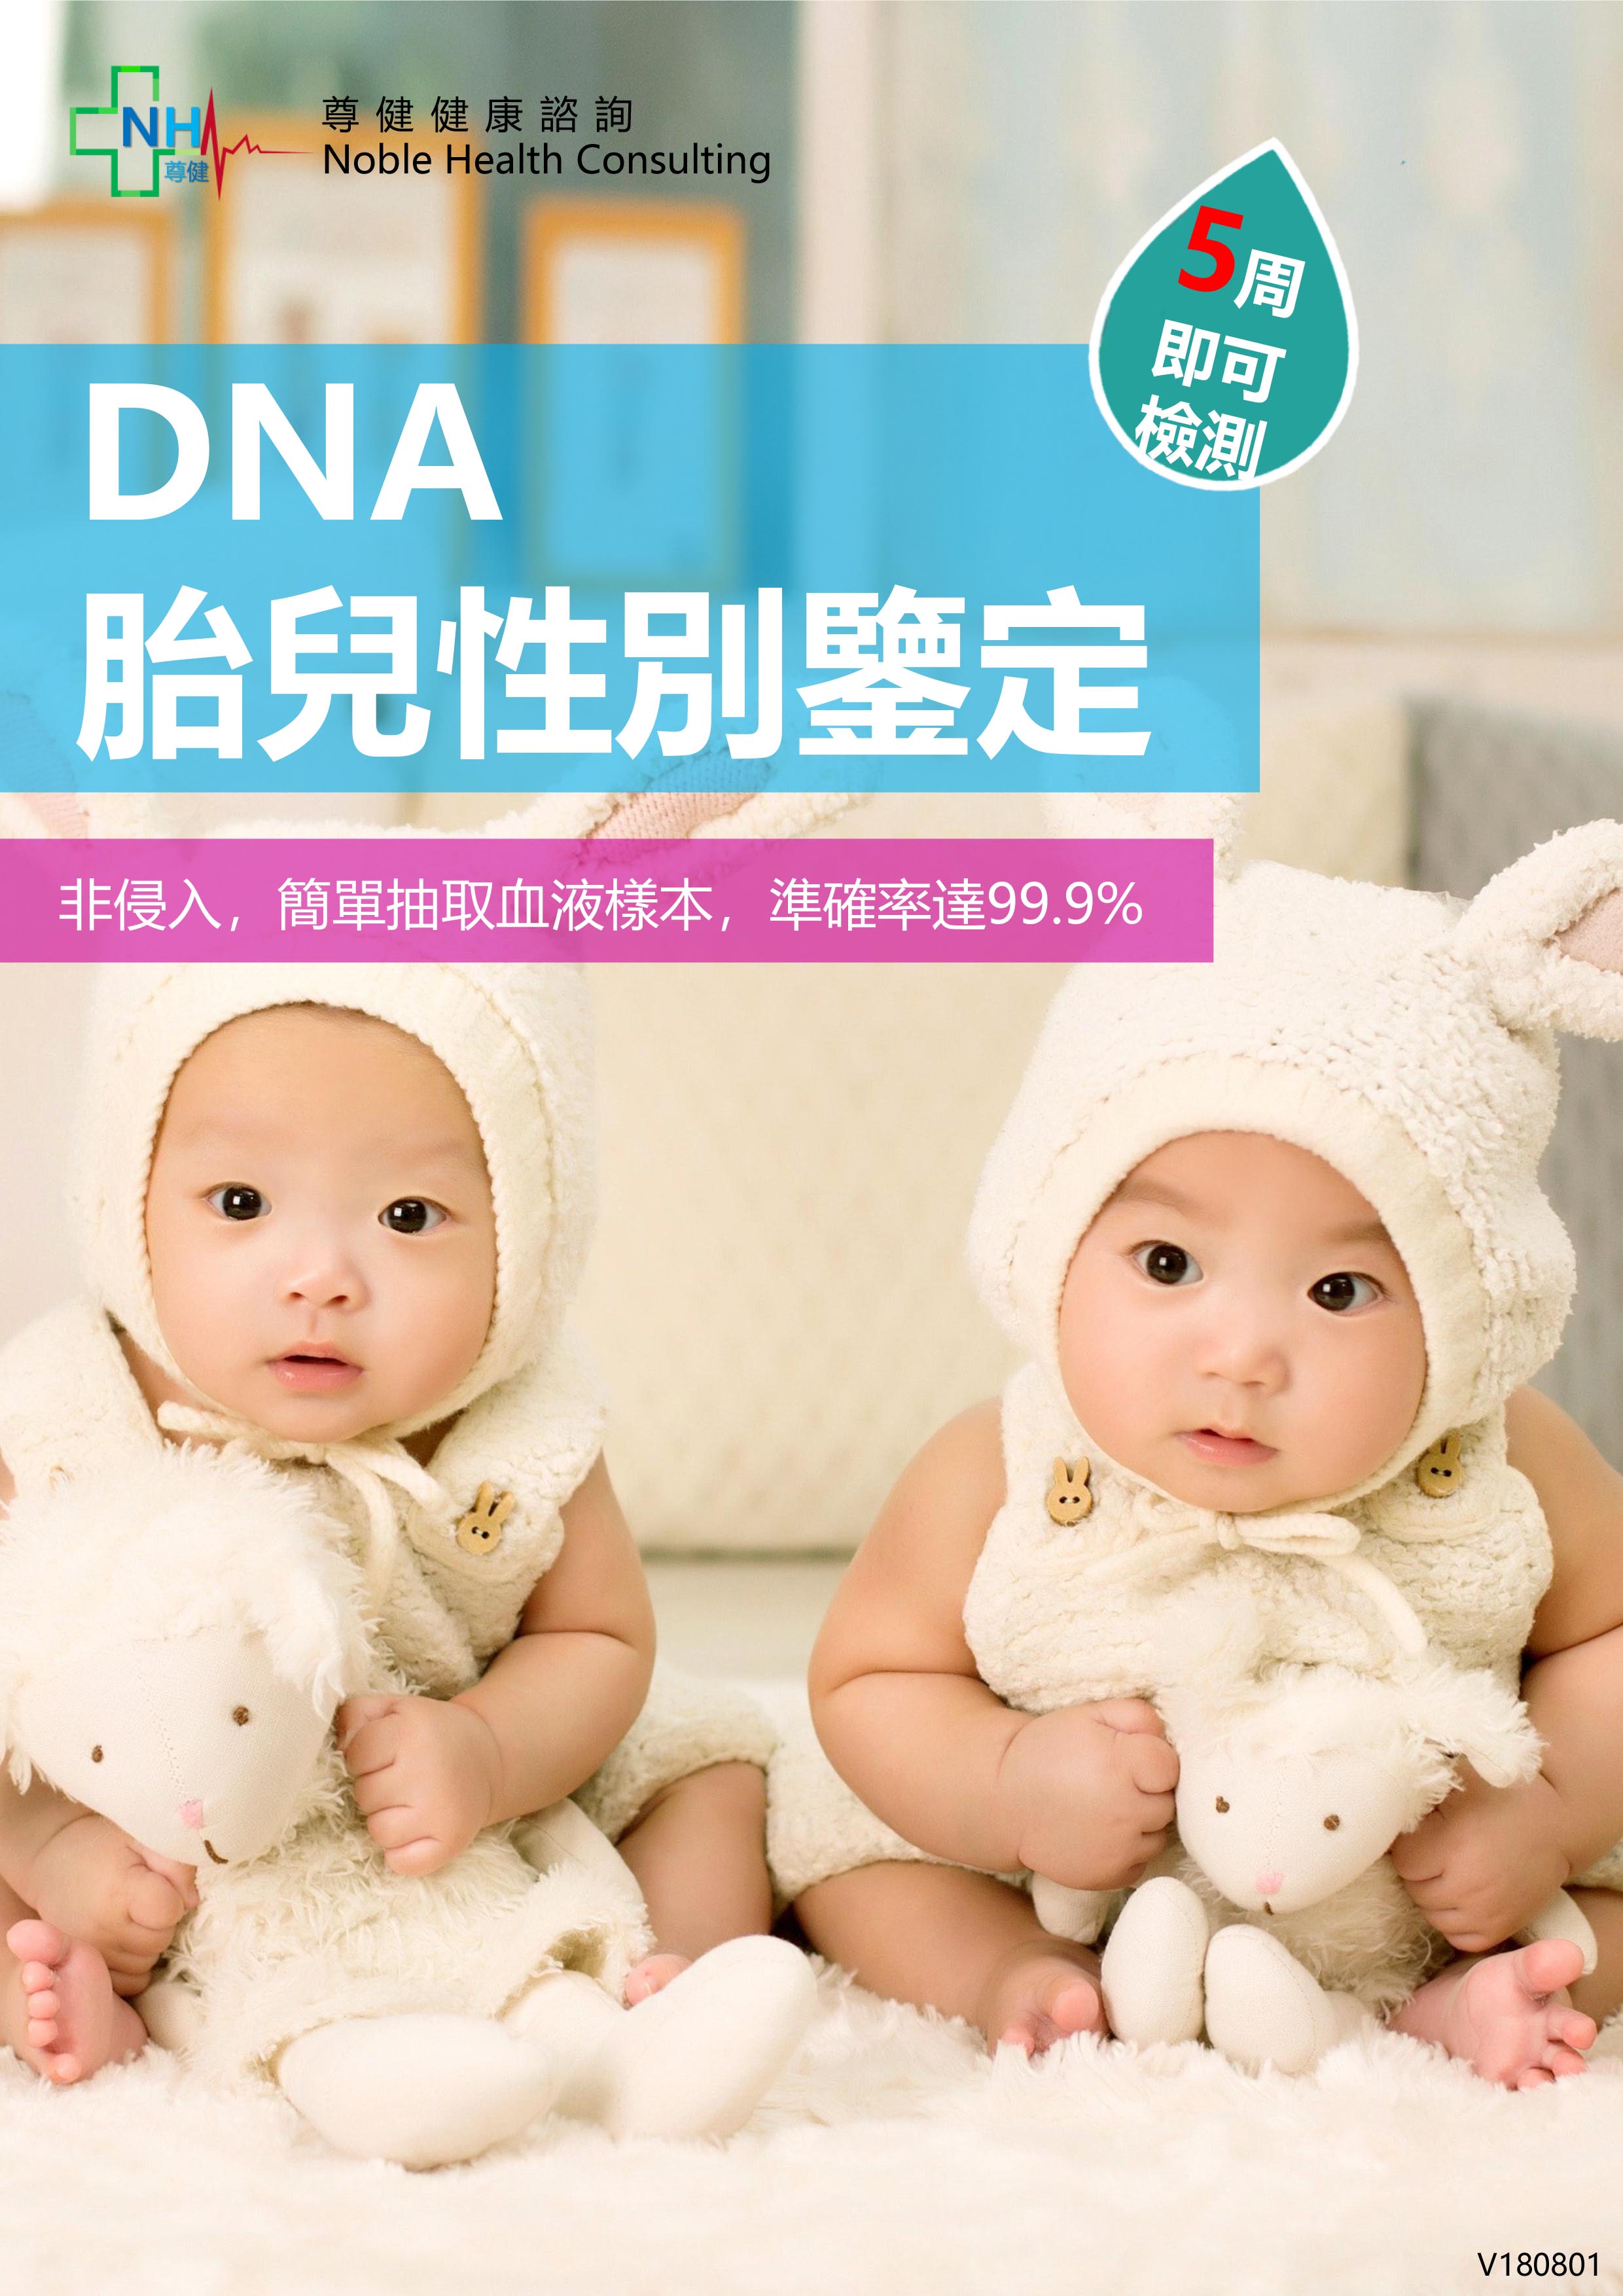 dna-5-baby-sex-test-5-1.jpg